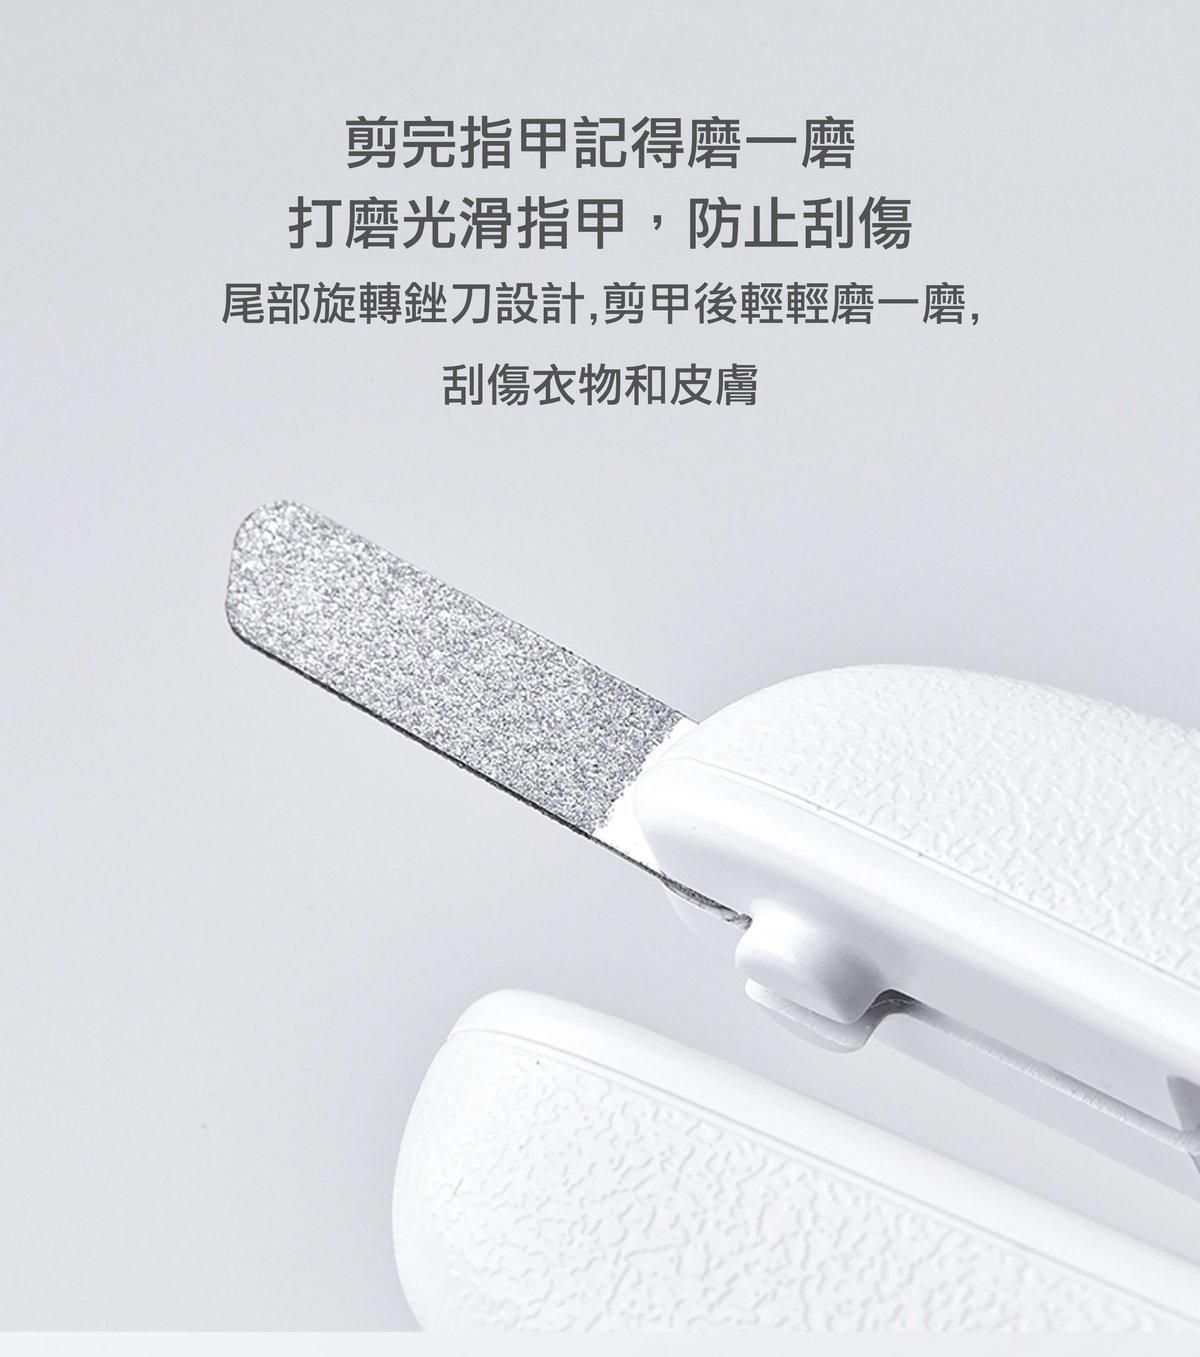 Petkit - LED pet nail clipper [Hong Kong licensed product]